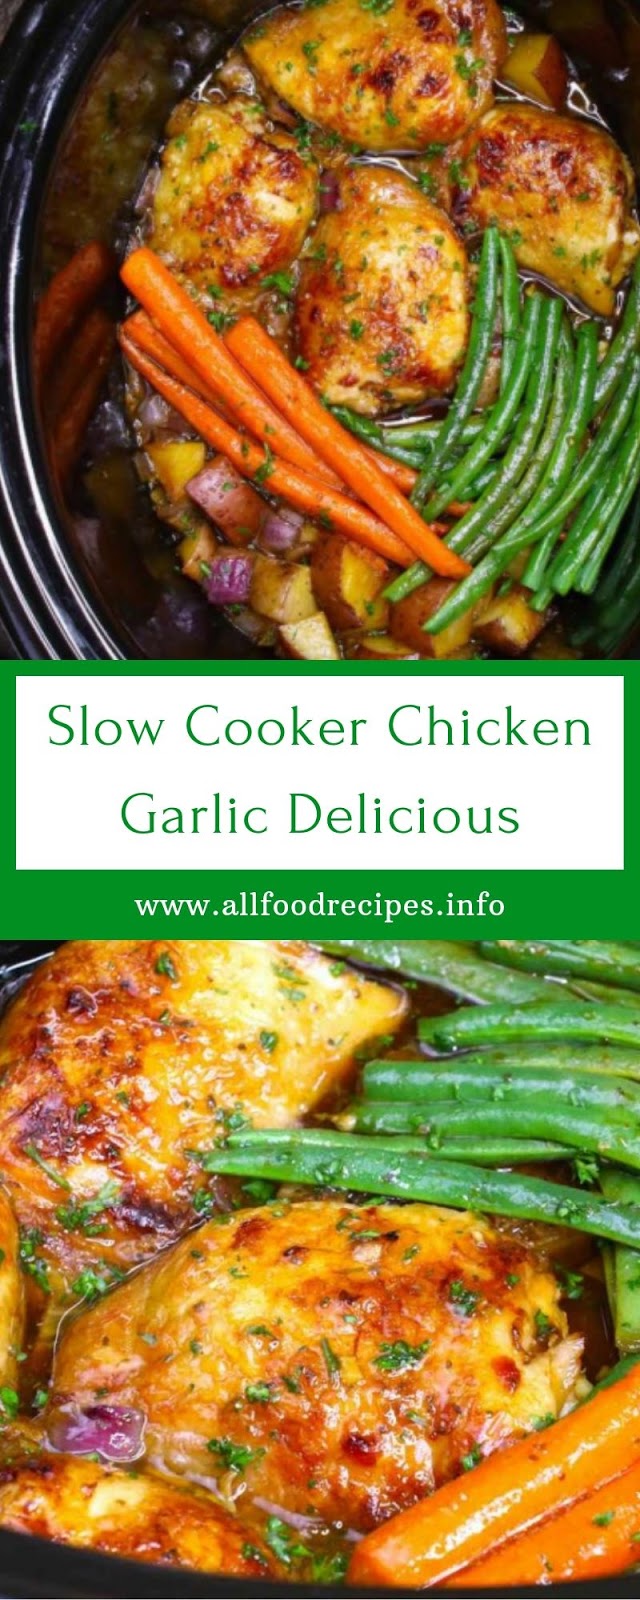 Slow Cooker Chicken Garlic Delicious